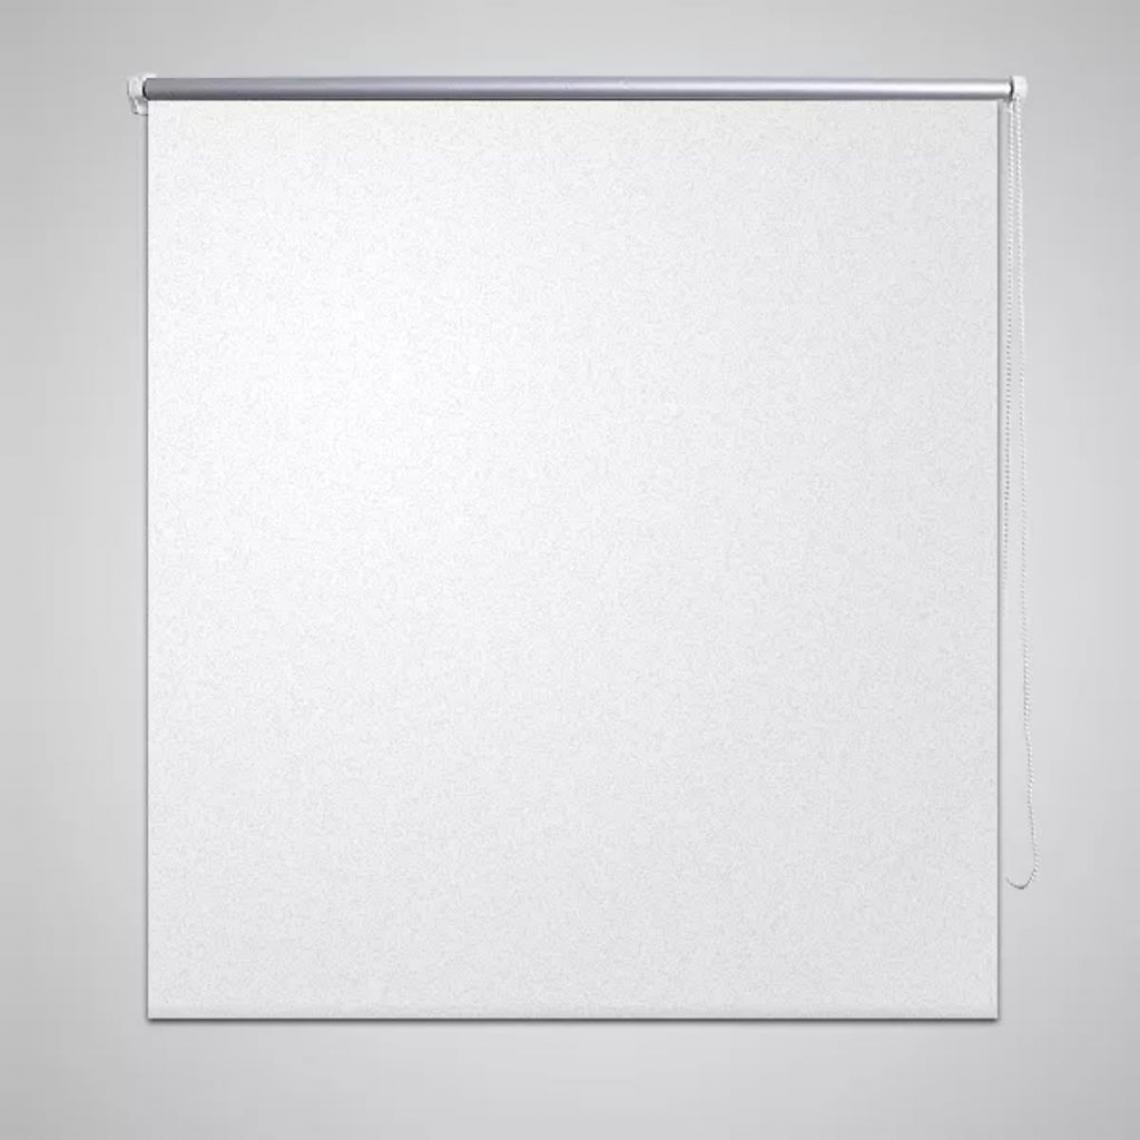 Hucoco - Store enrouleur occultant blanc 40 x 100 cm - Blanc - Store compatible Velux